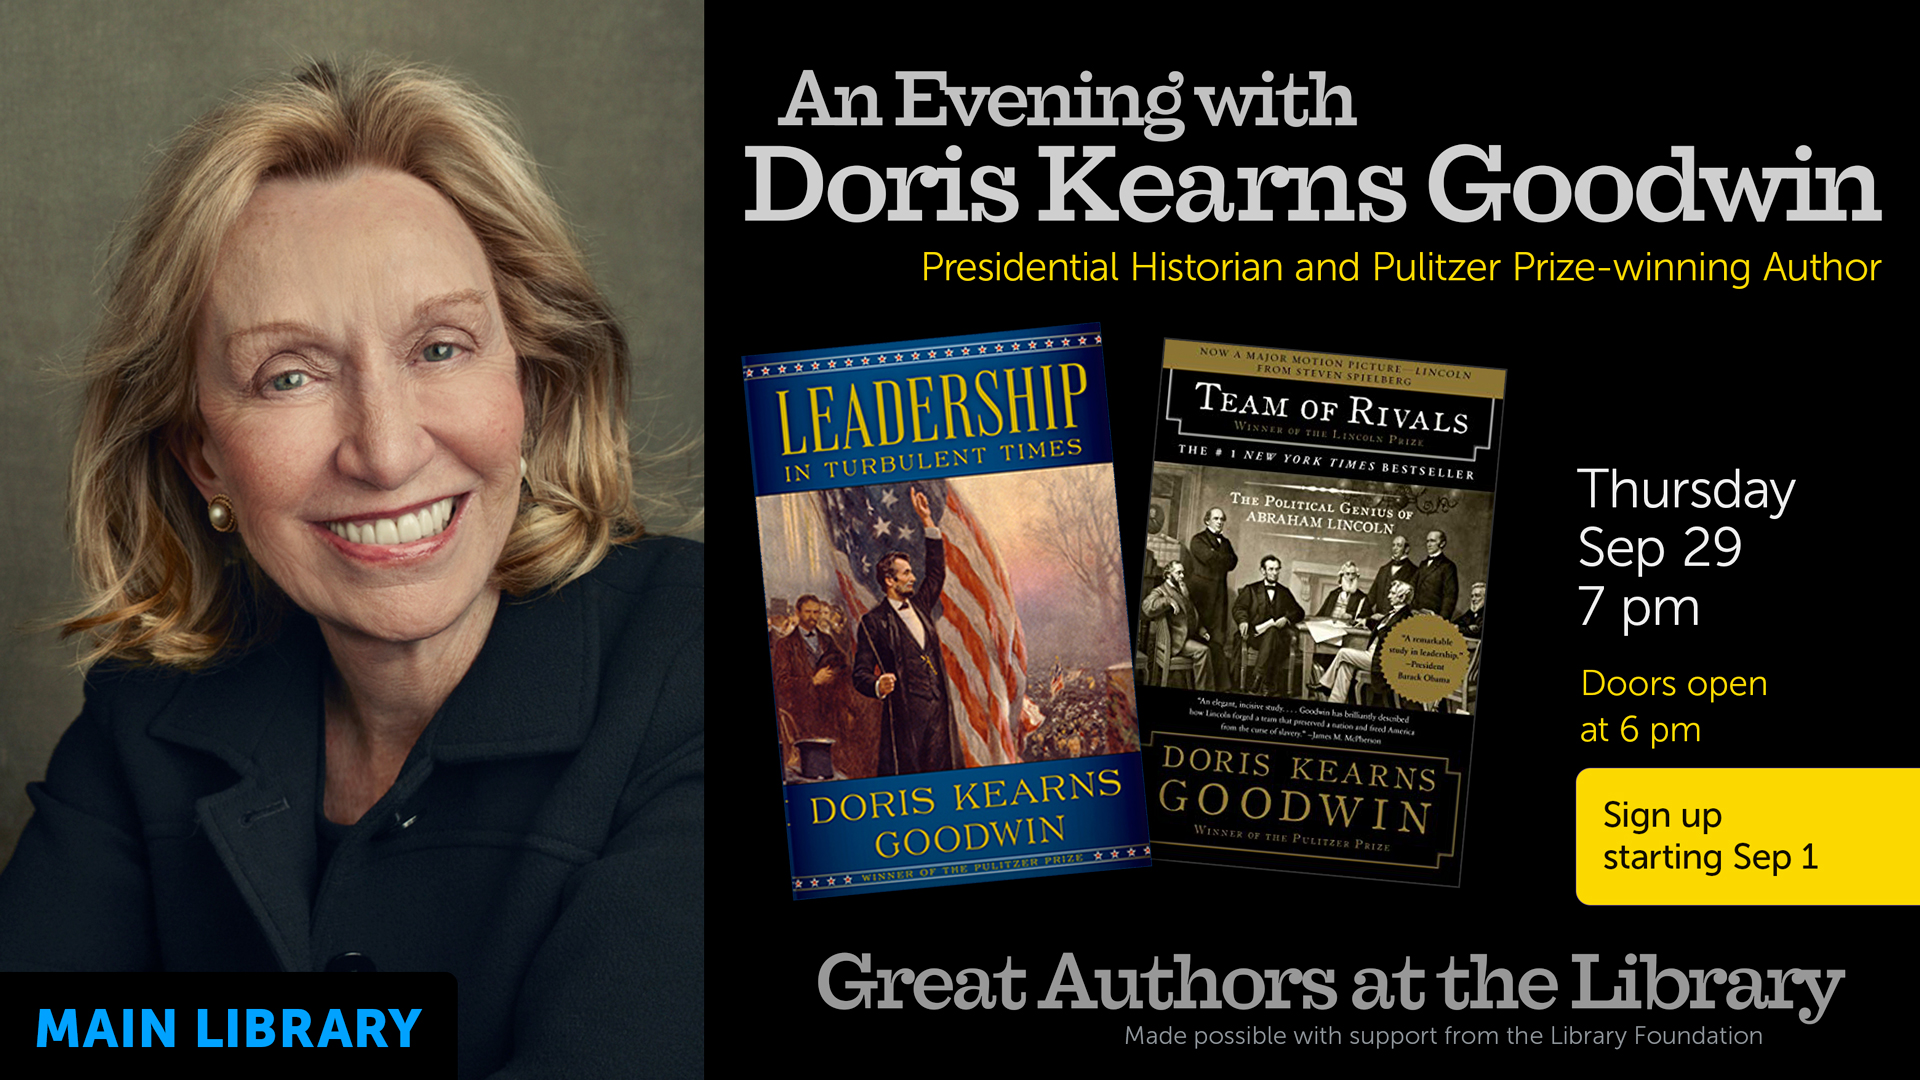 portrait of Doris Kearns Goodwin, event details